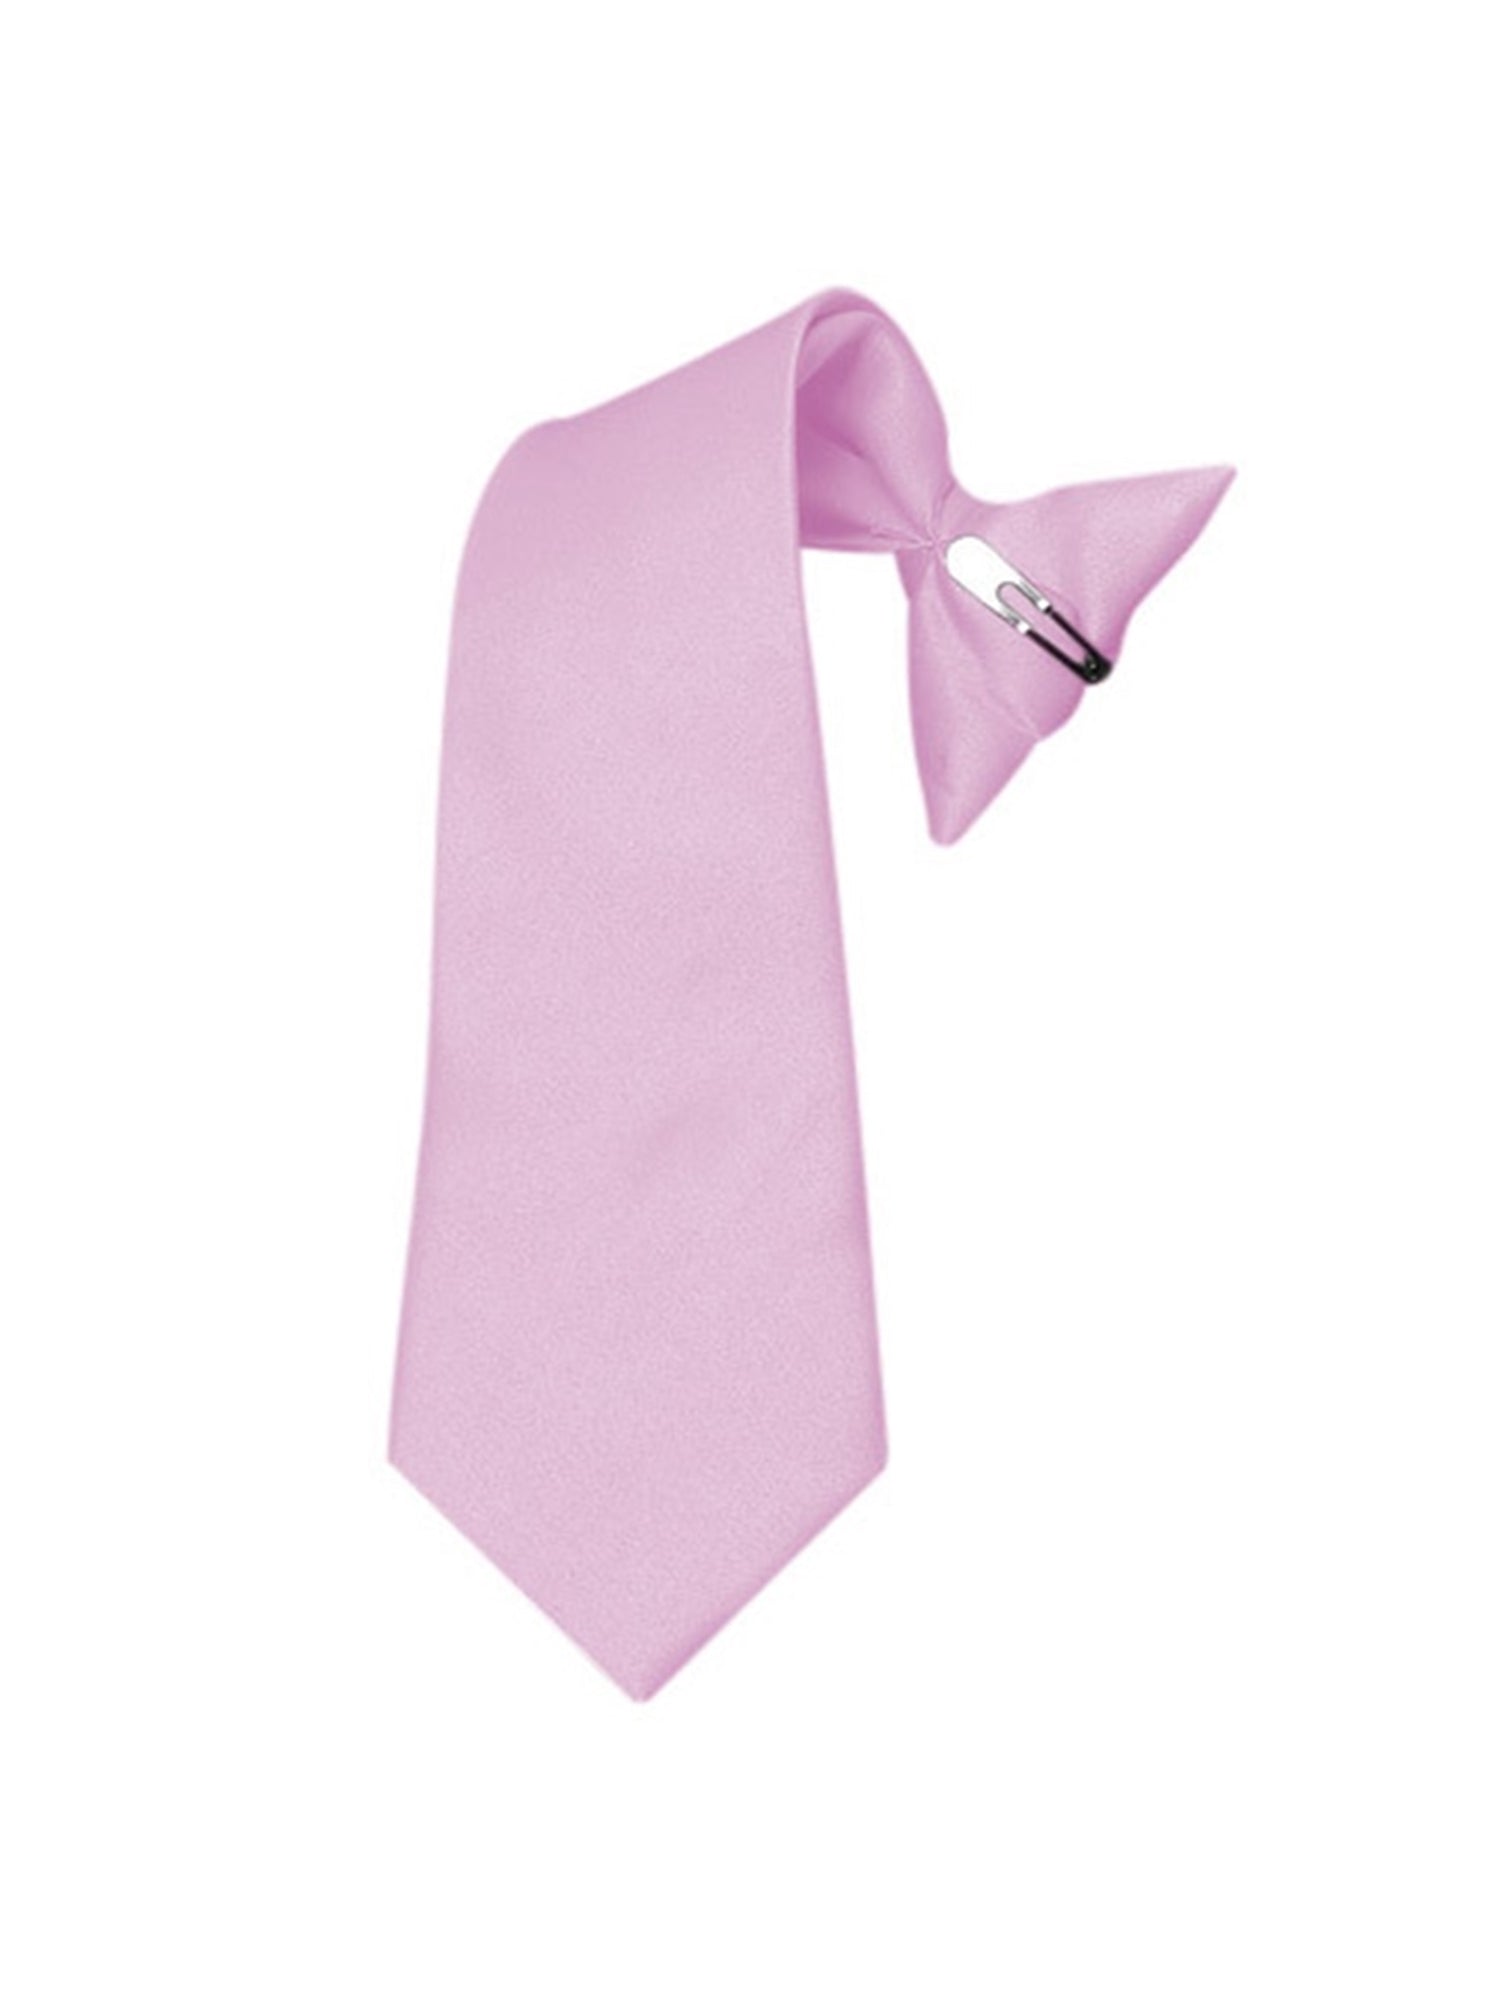 Boy's Solid Color Pre-tied Clip On Neck Tie Neck Tie TheDapperTie Lavender 8" x 2.5" 